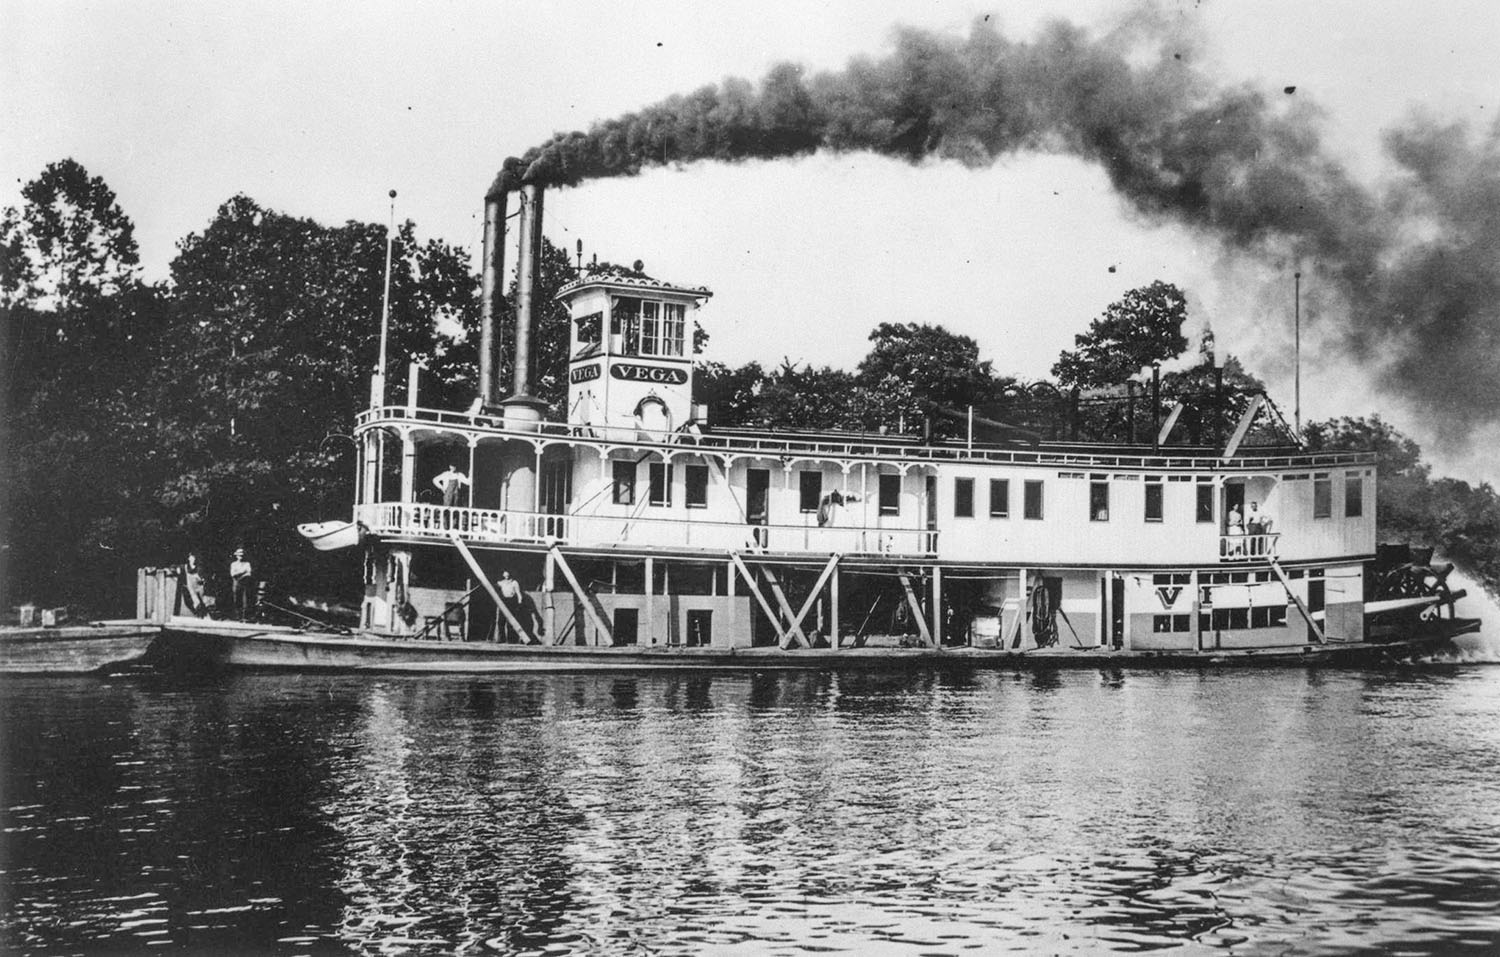 On the Musgingum River, July 26, 1910. (U.S. Engineers photo)